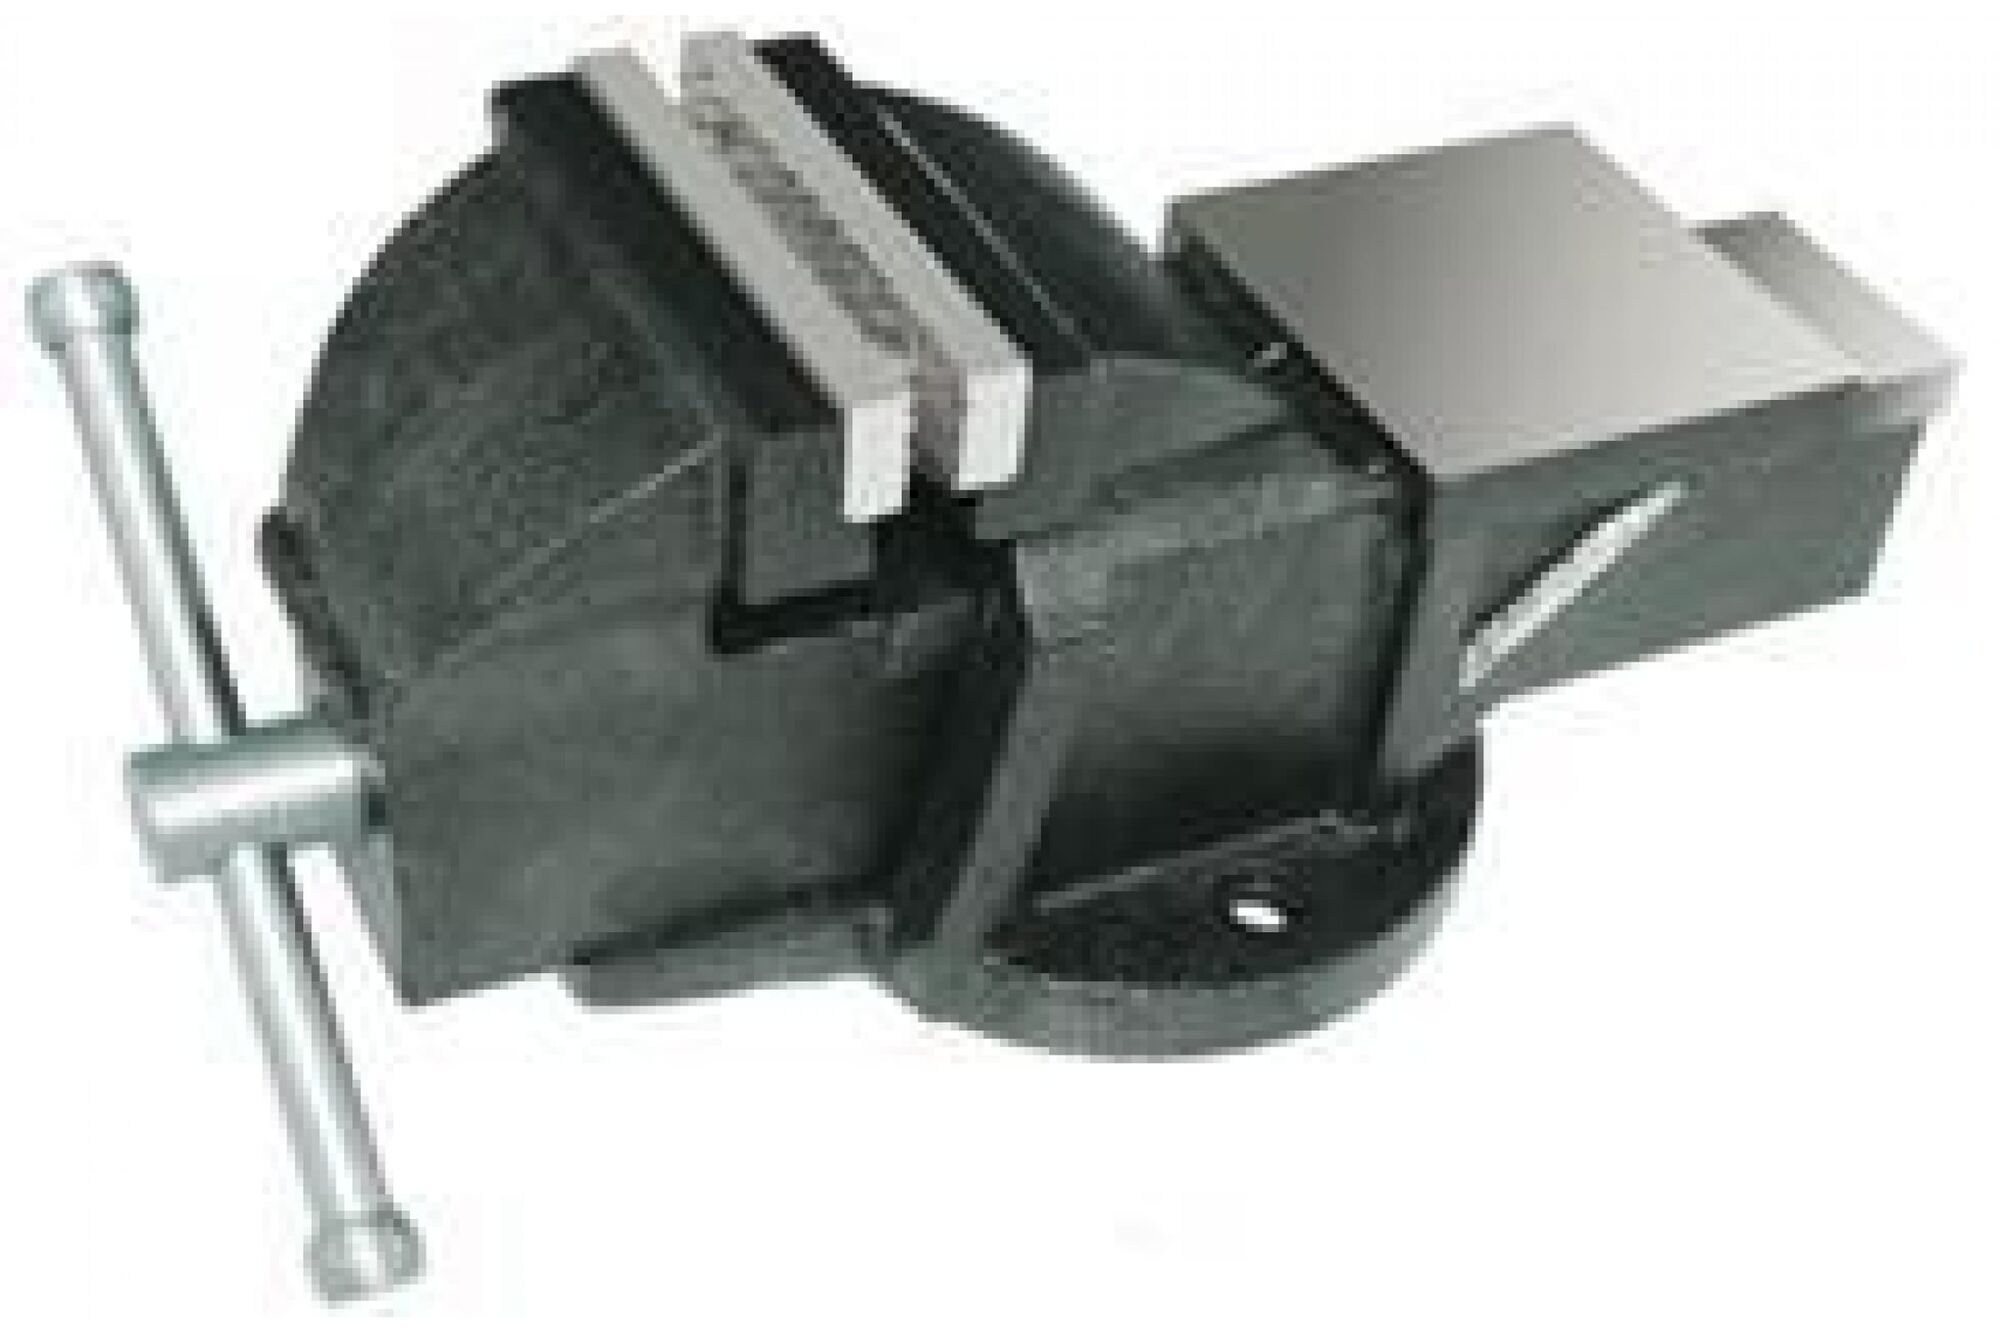 Слесарные тиски CNIC 150 мм 6дюйм неповоротные массивные с наковальней LT83106 упакованы по 1 шт. 50845